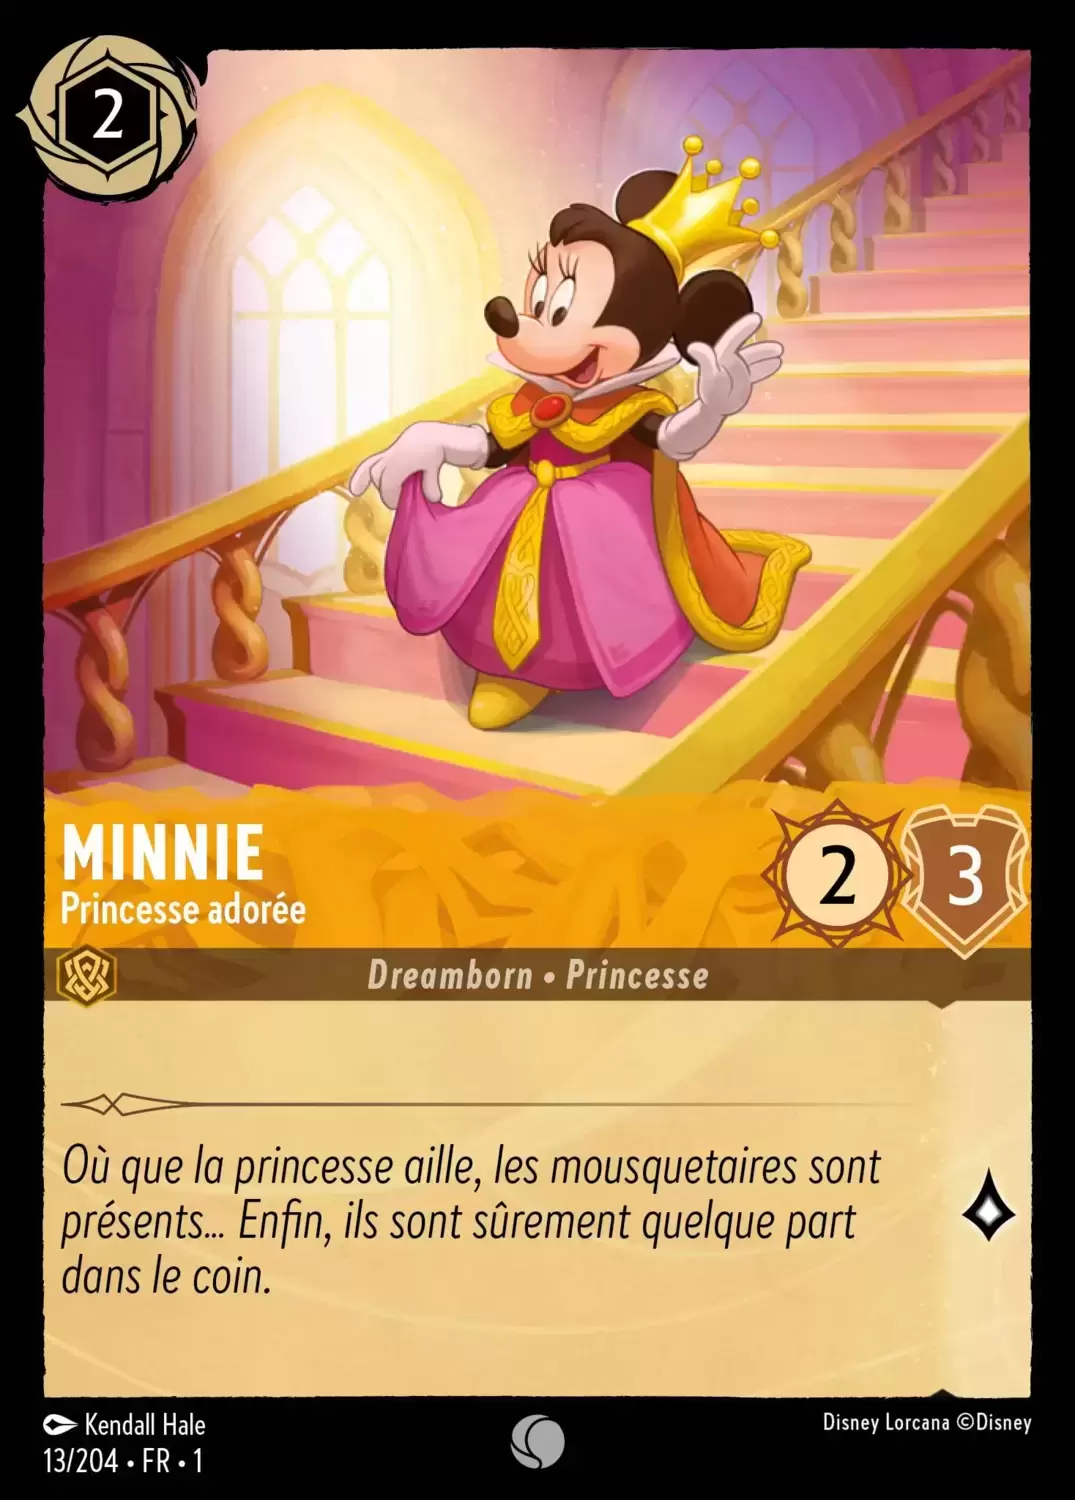 Premier chapitre - Minnie - Princesse adorée